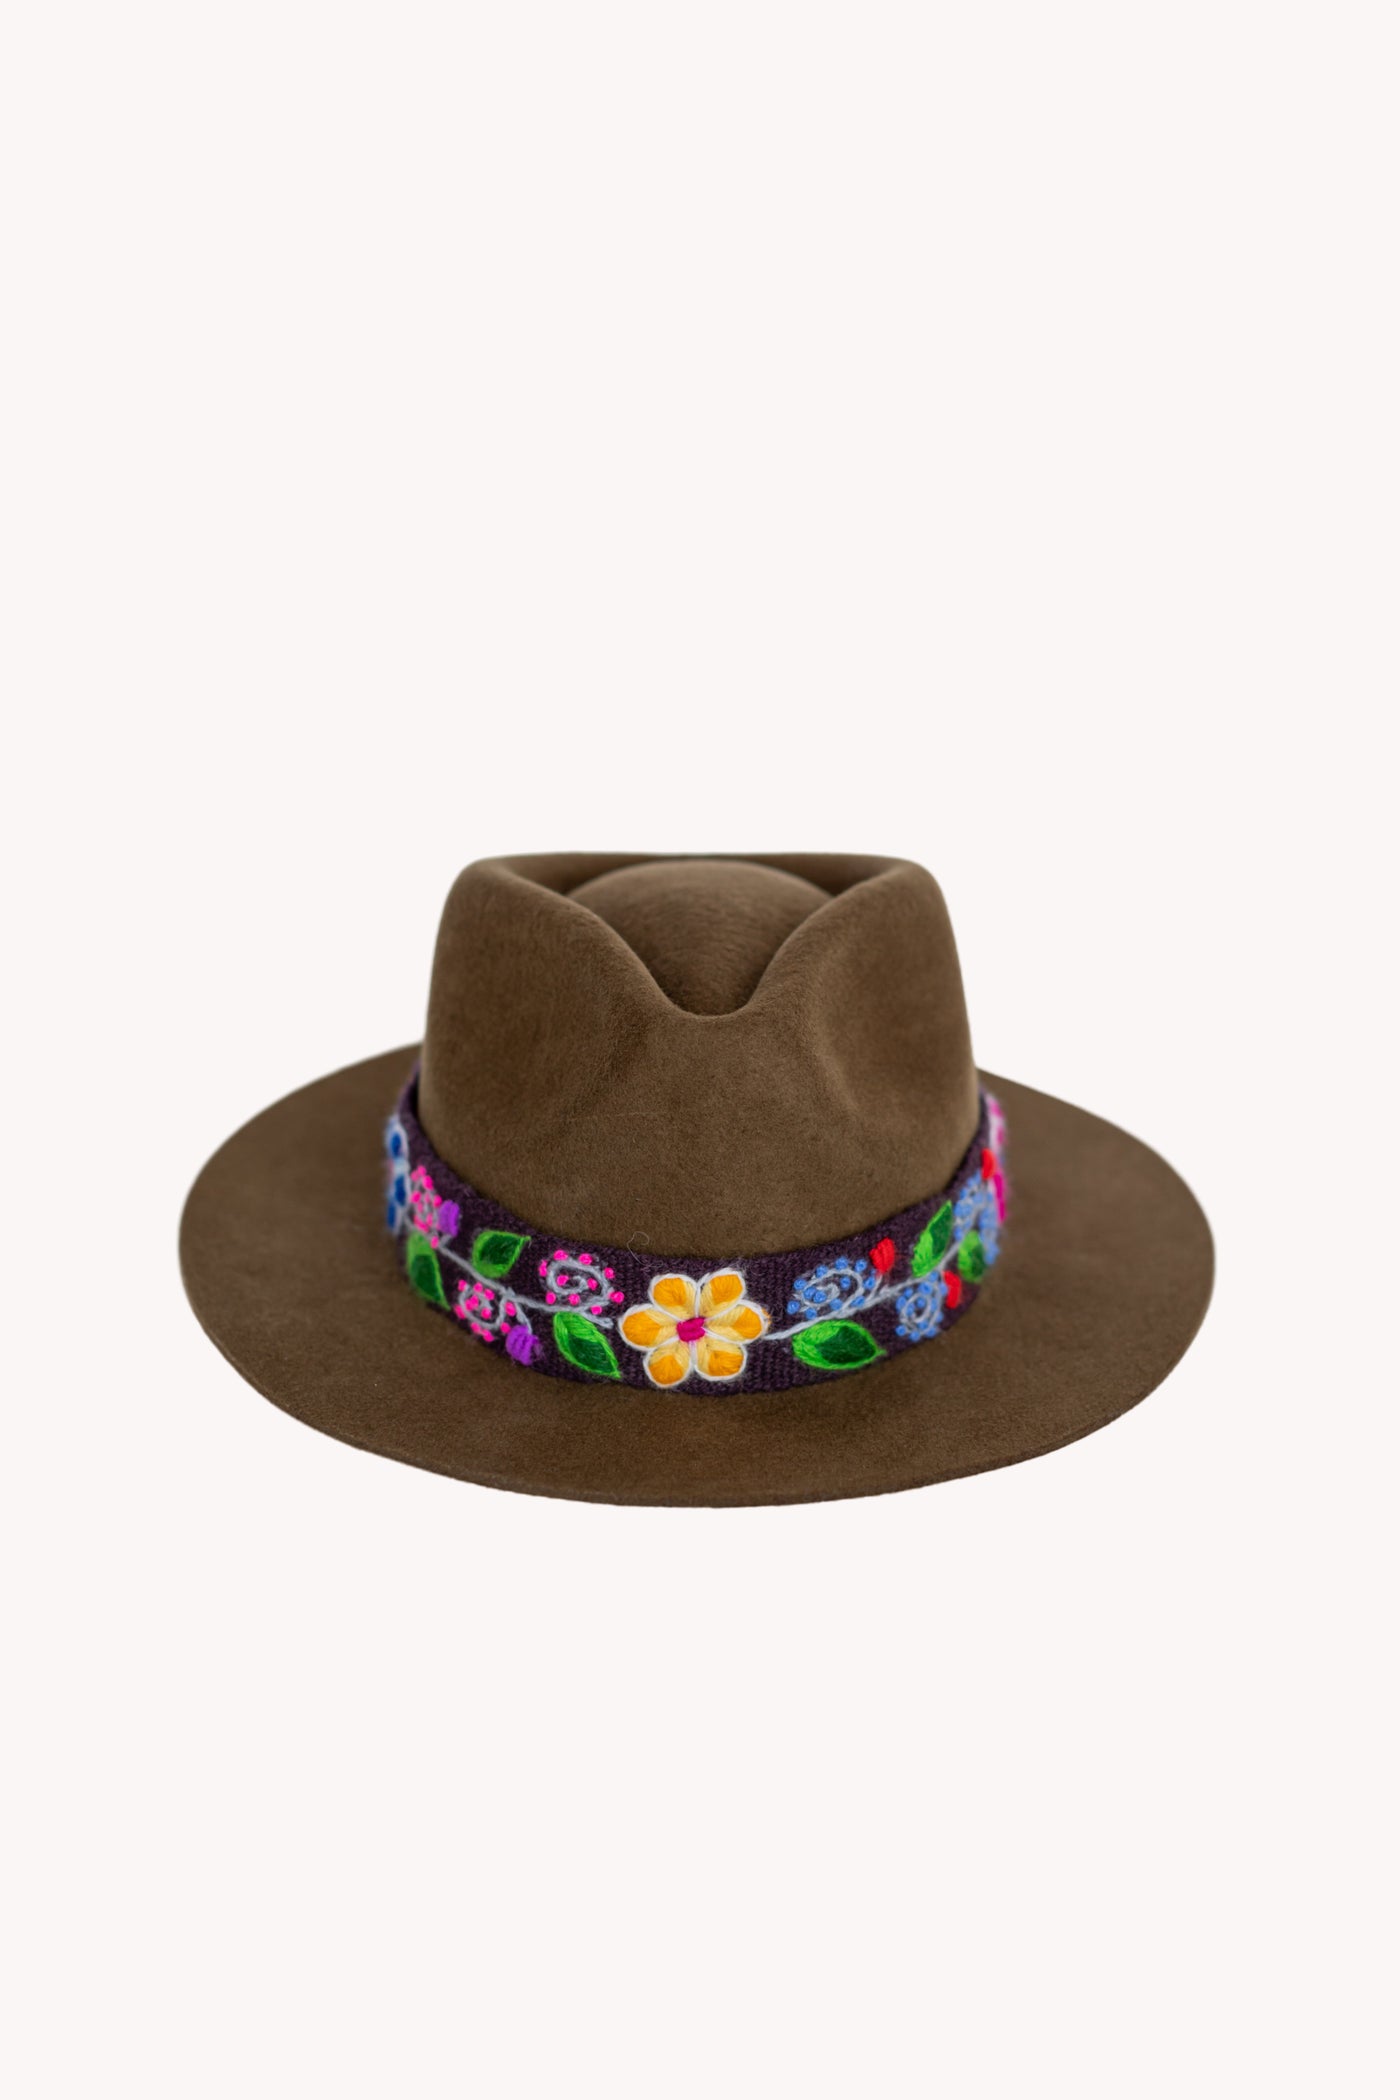 Brown Fedora style alpaca wool hat